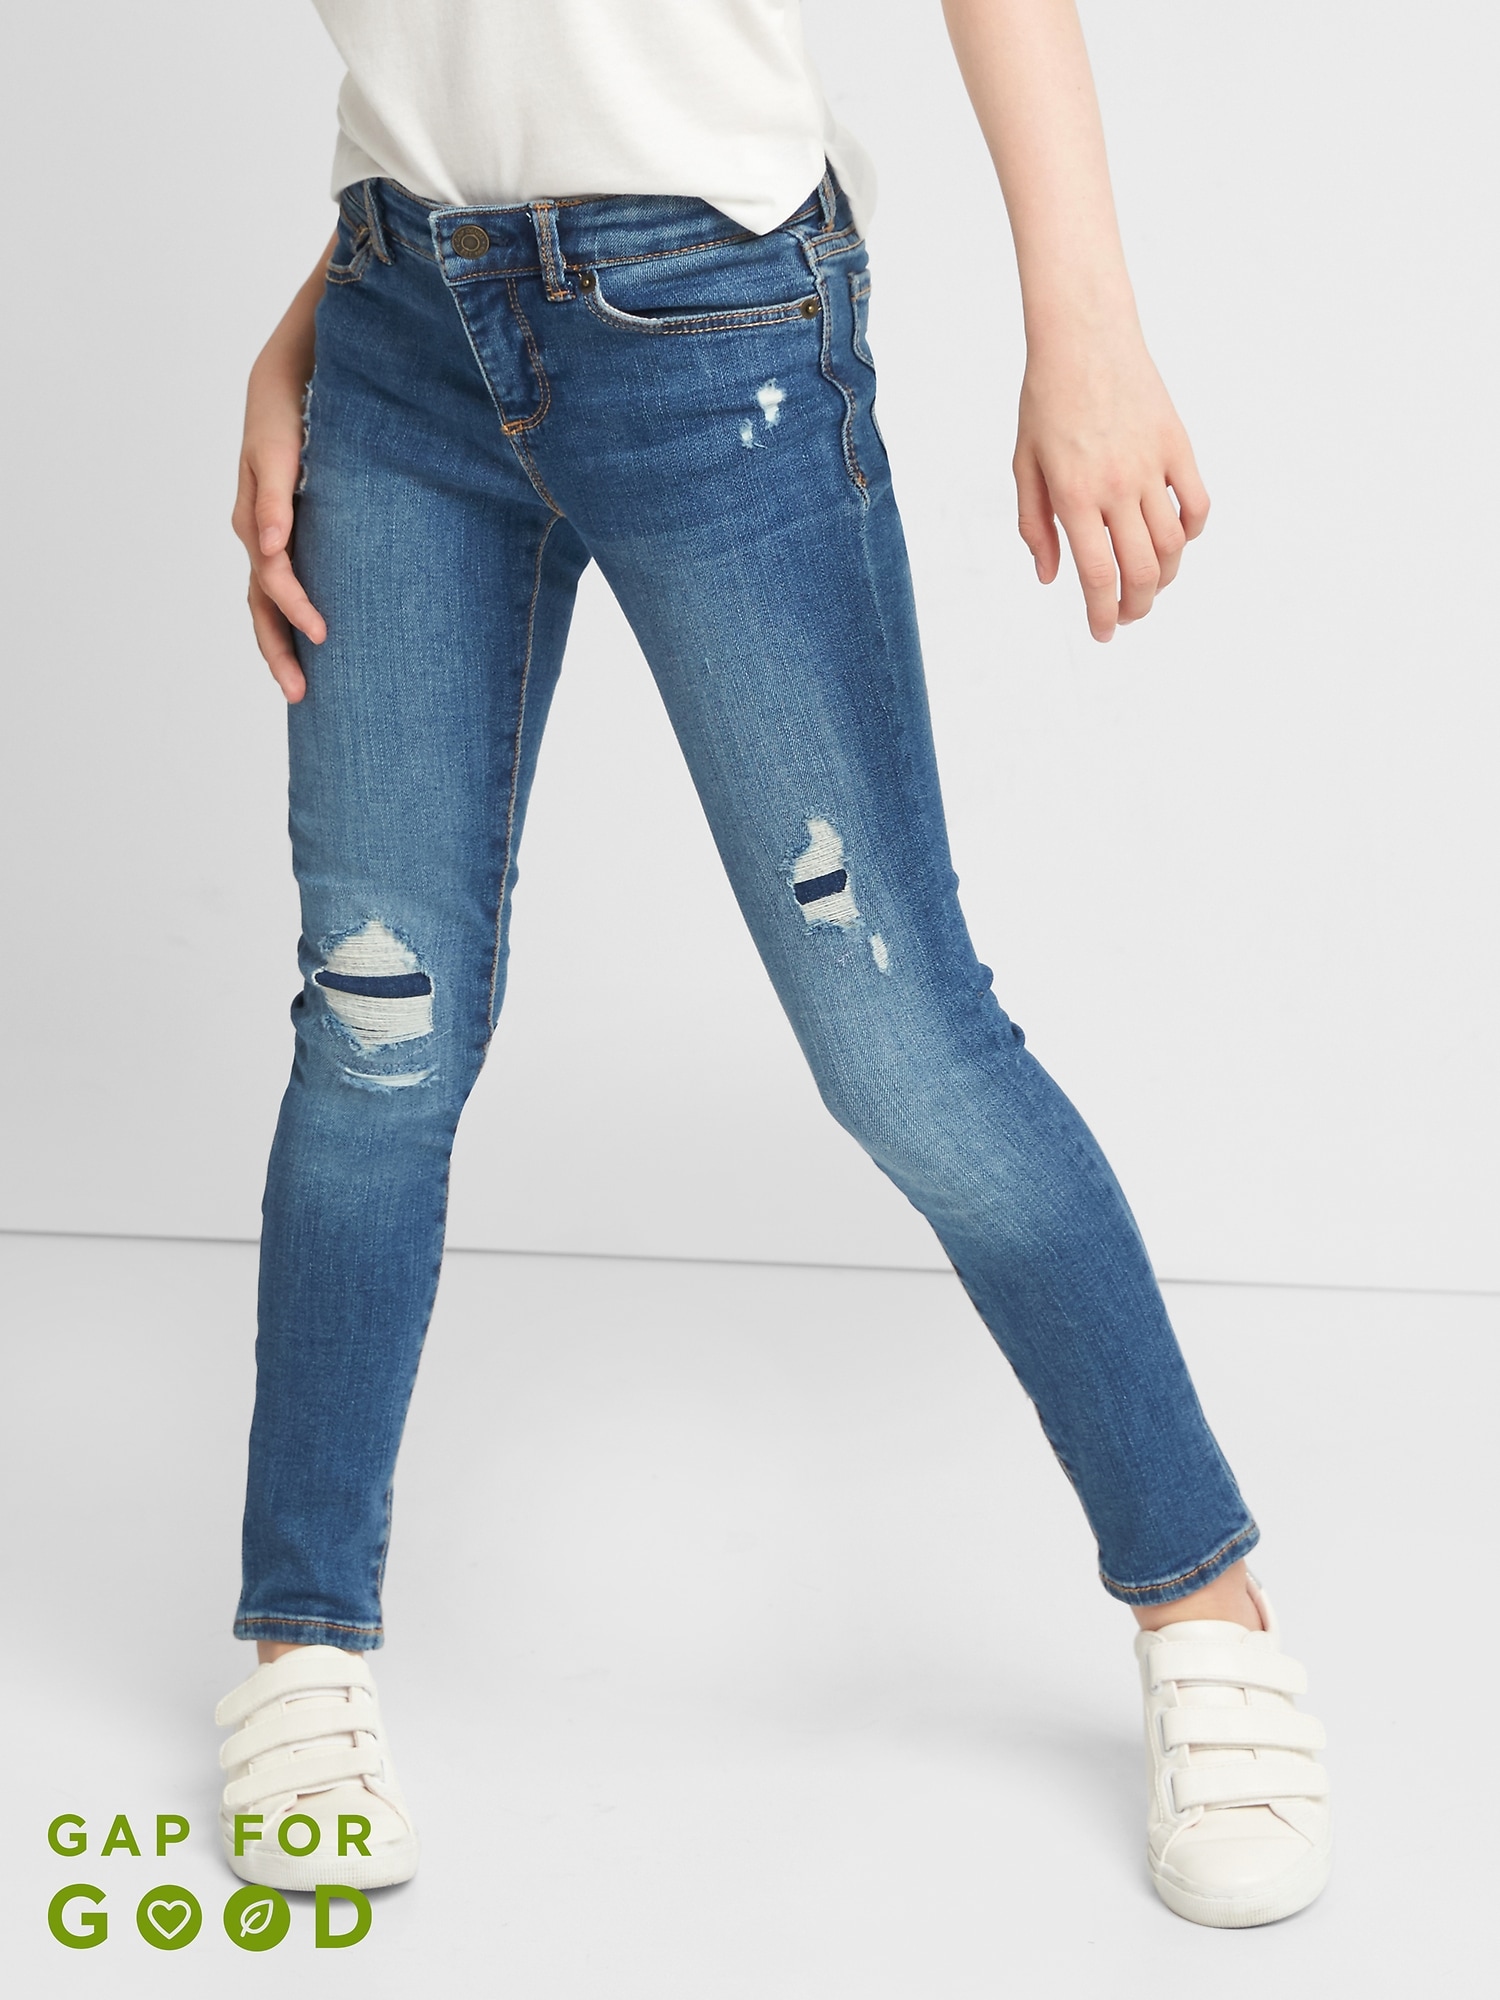 super skinny jeans stretch